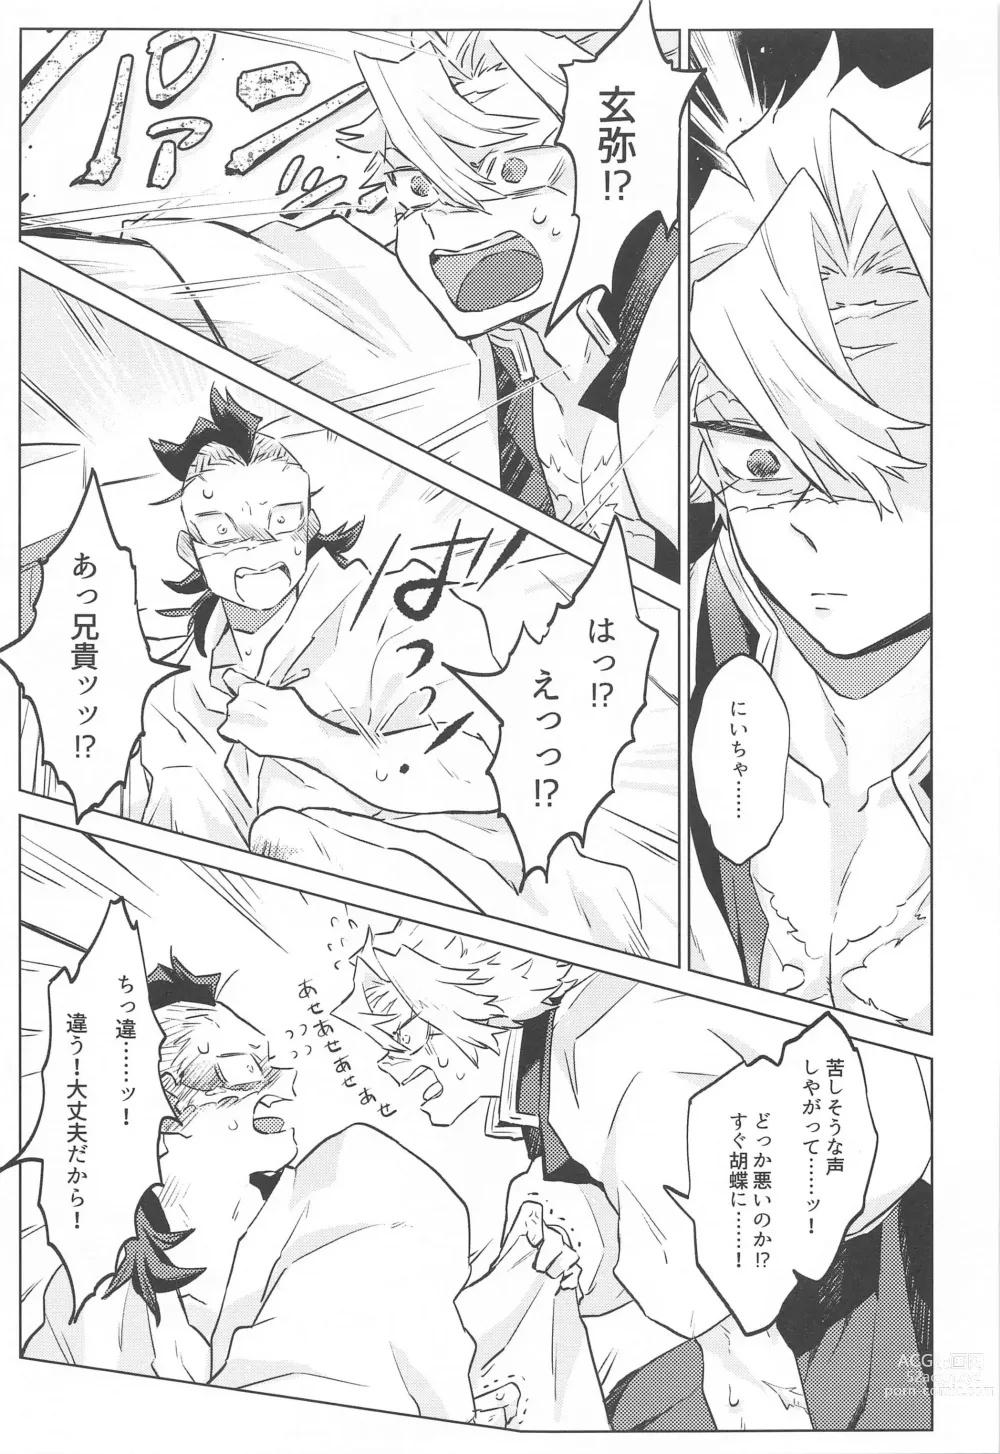 Page 7 of doujinshi Shion no Kusari